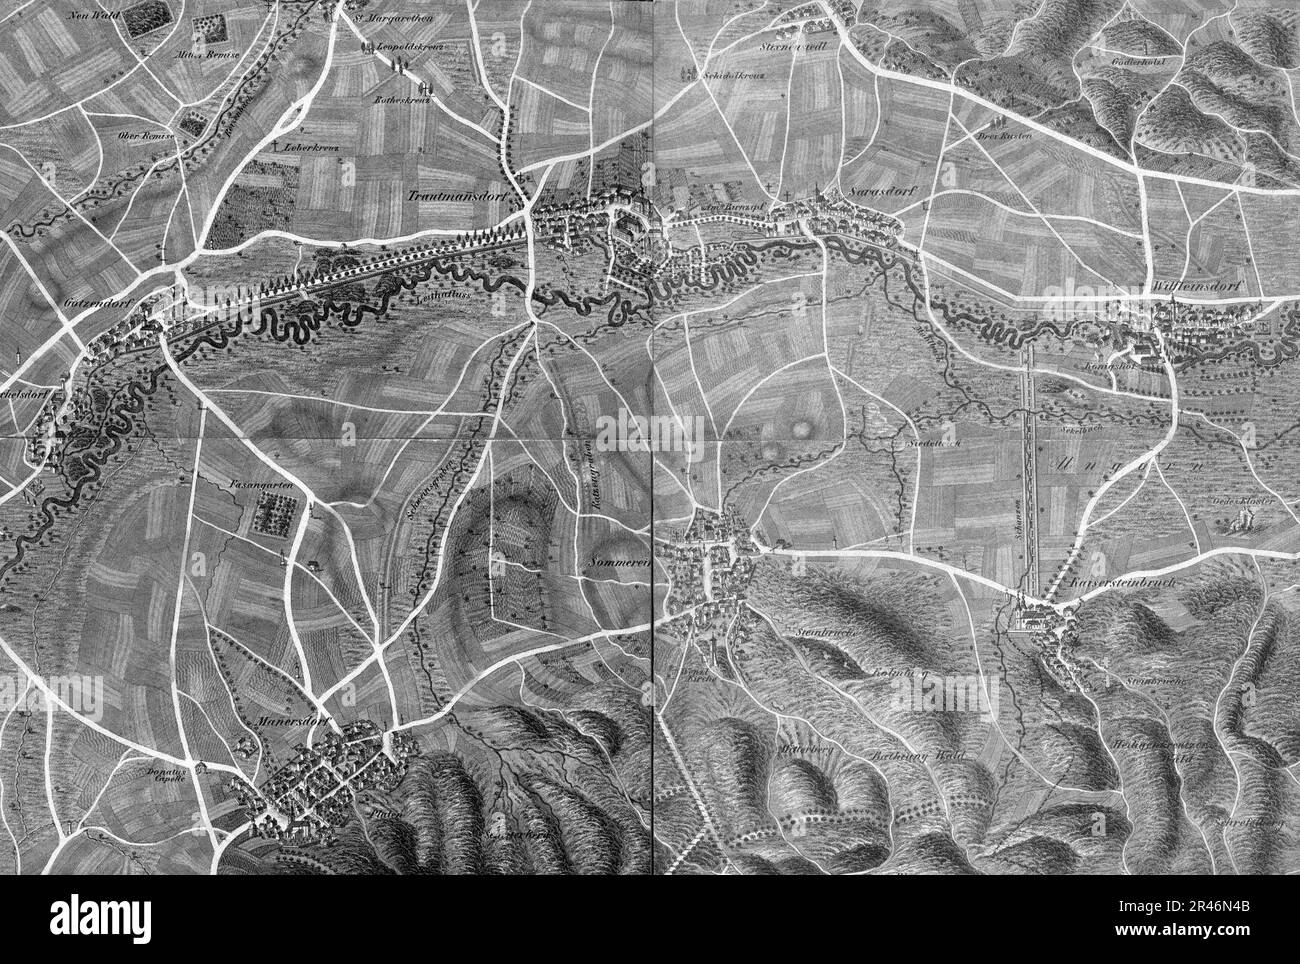 Umgebung von Trautmannsdorf und Kaisersteinbruch in Ungarn - Schweickhardt 1837 - Sektion 26 Stock Photo